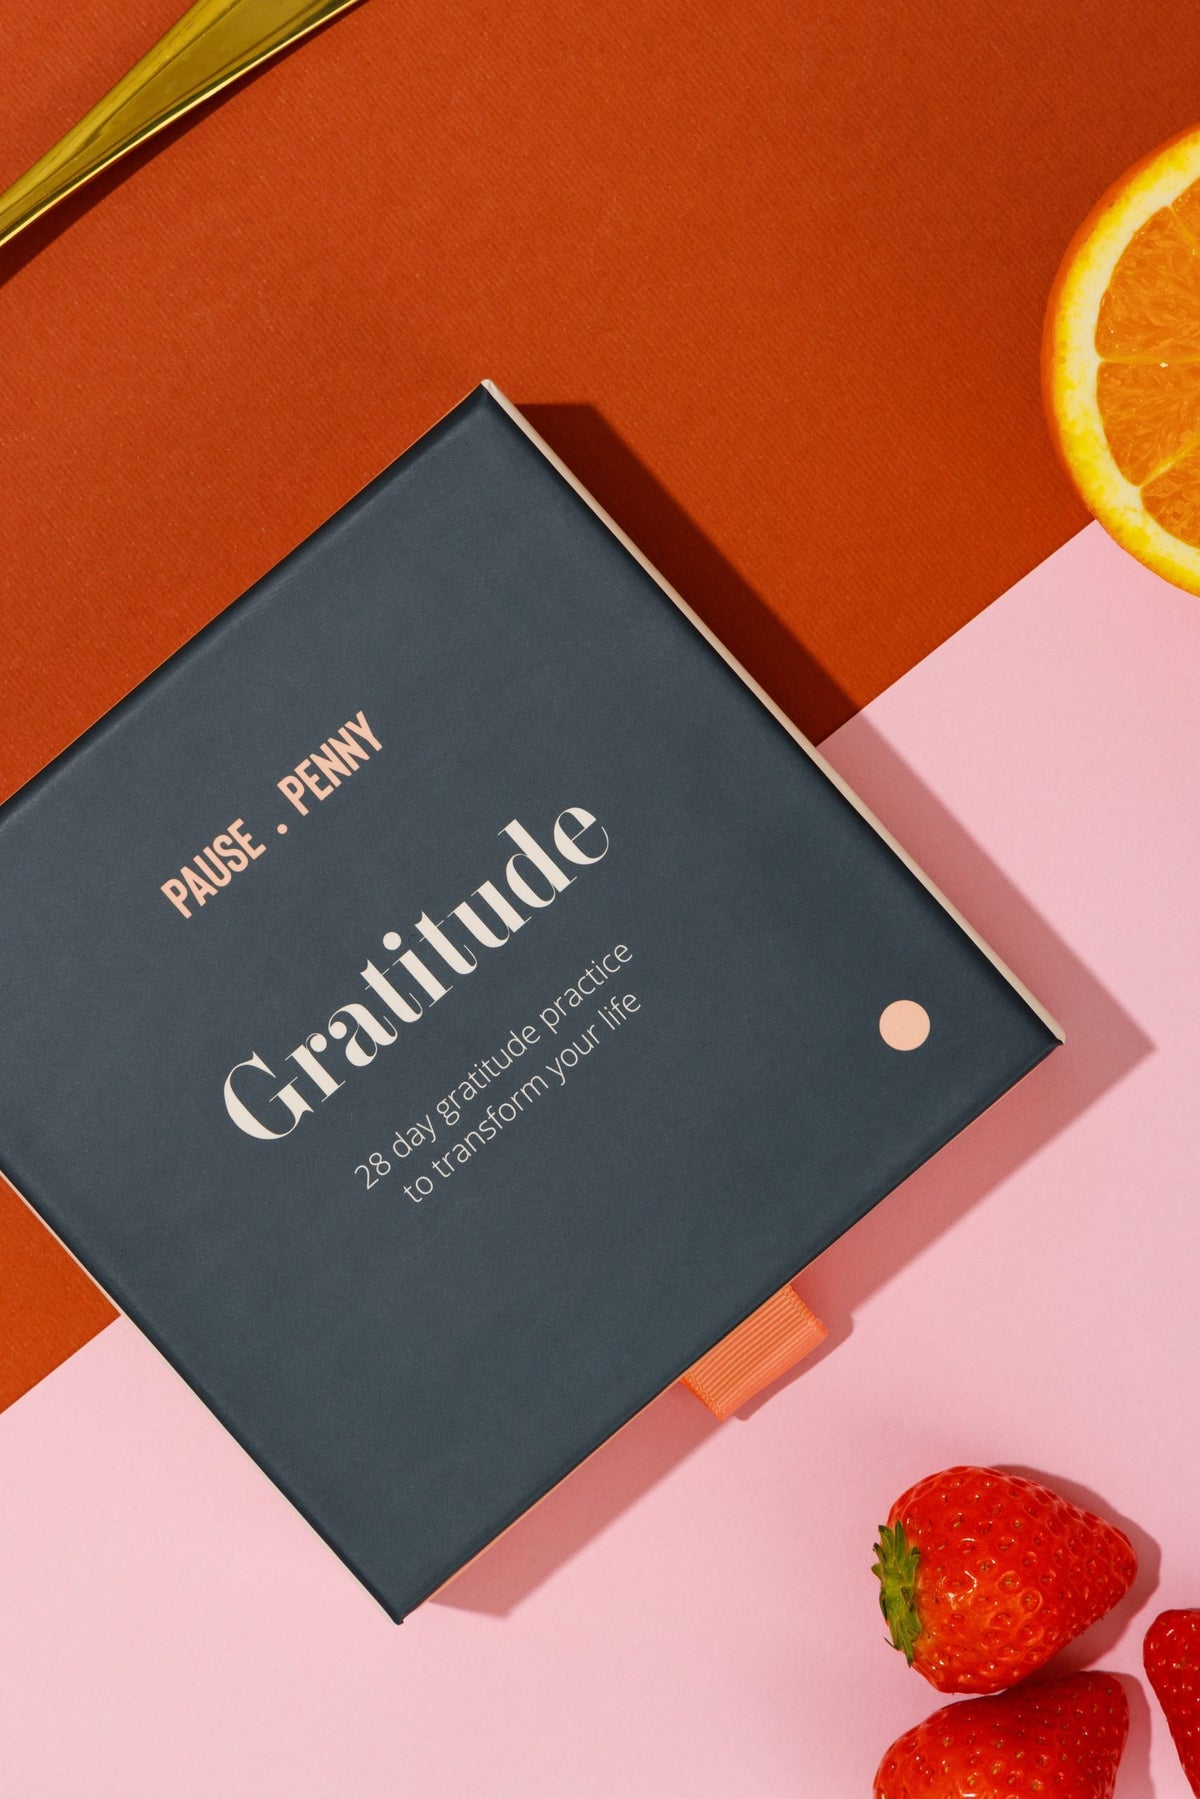 The 28 Day Gratitude Box